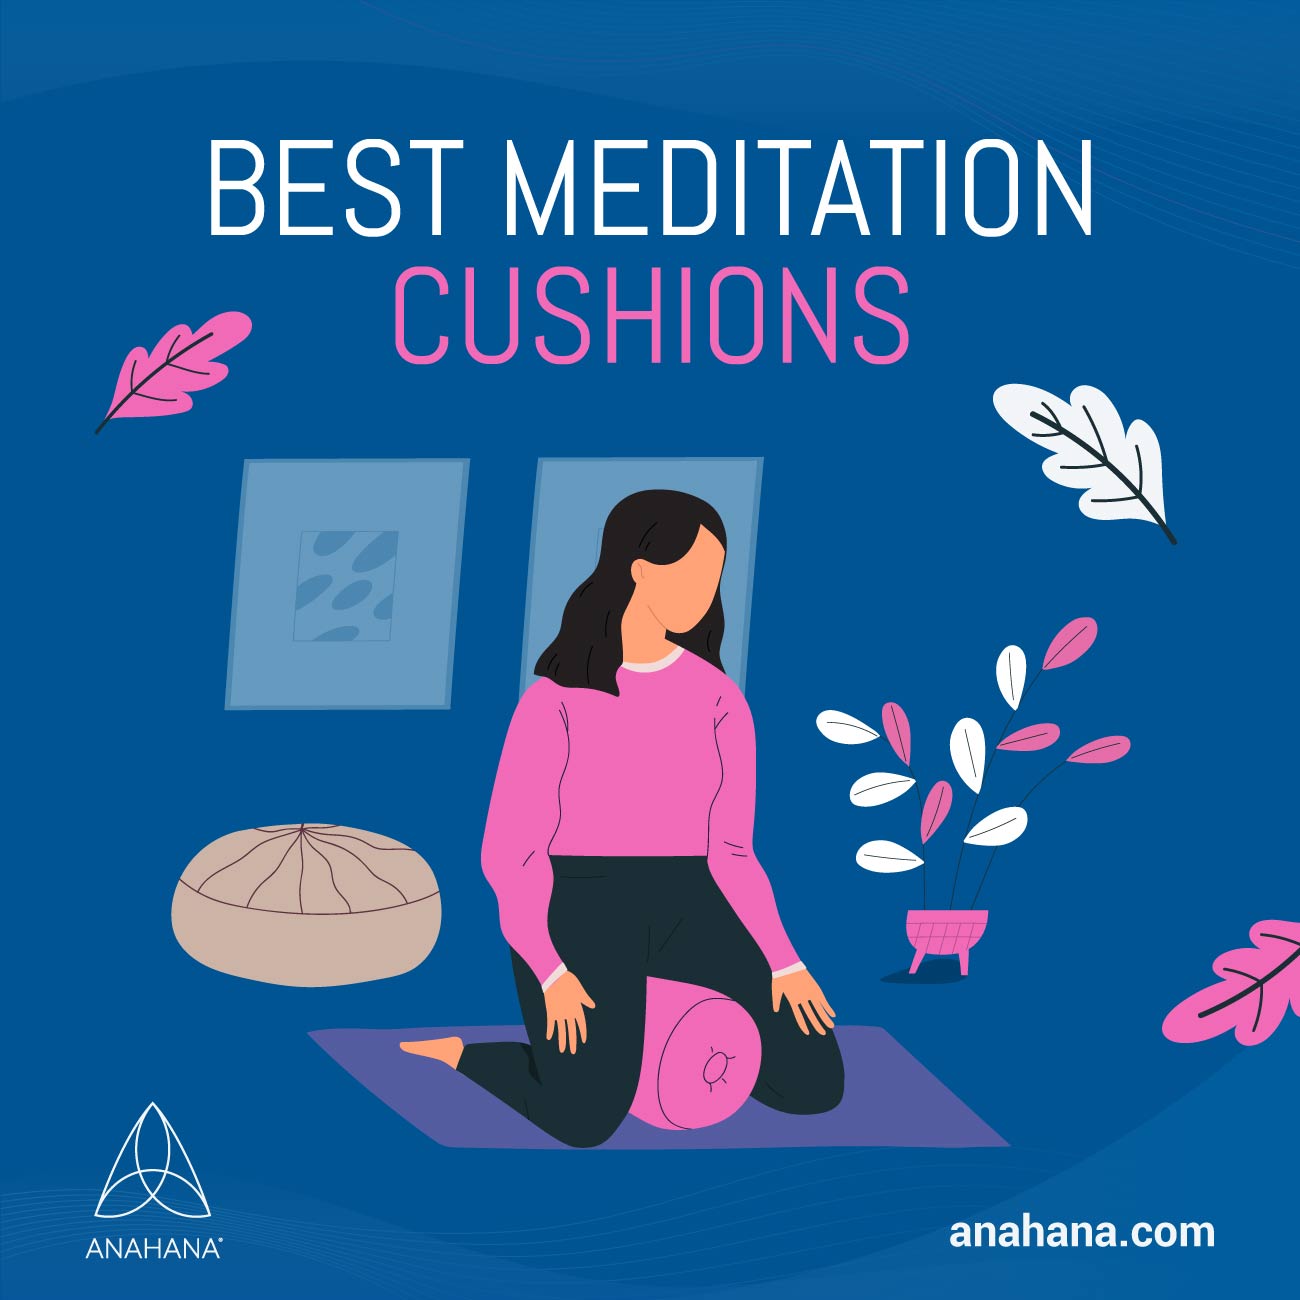 I migliori cuscini da meditazione